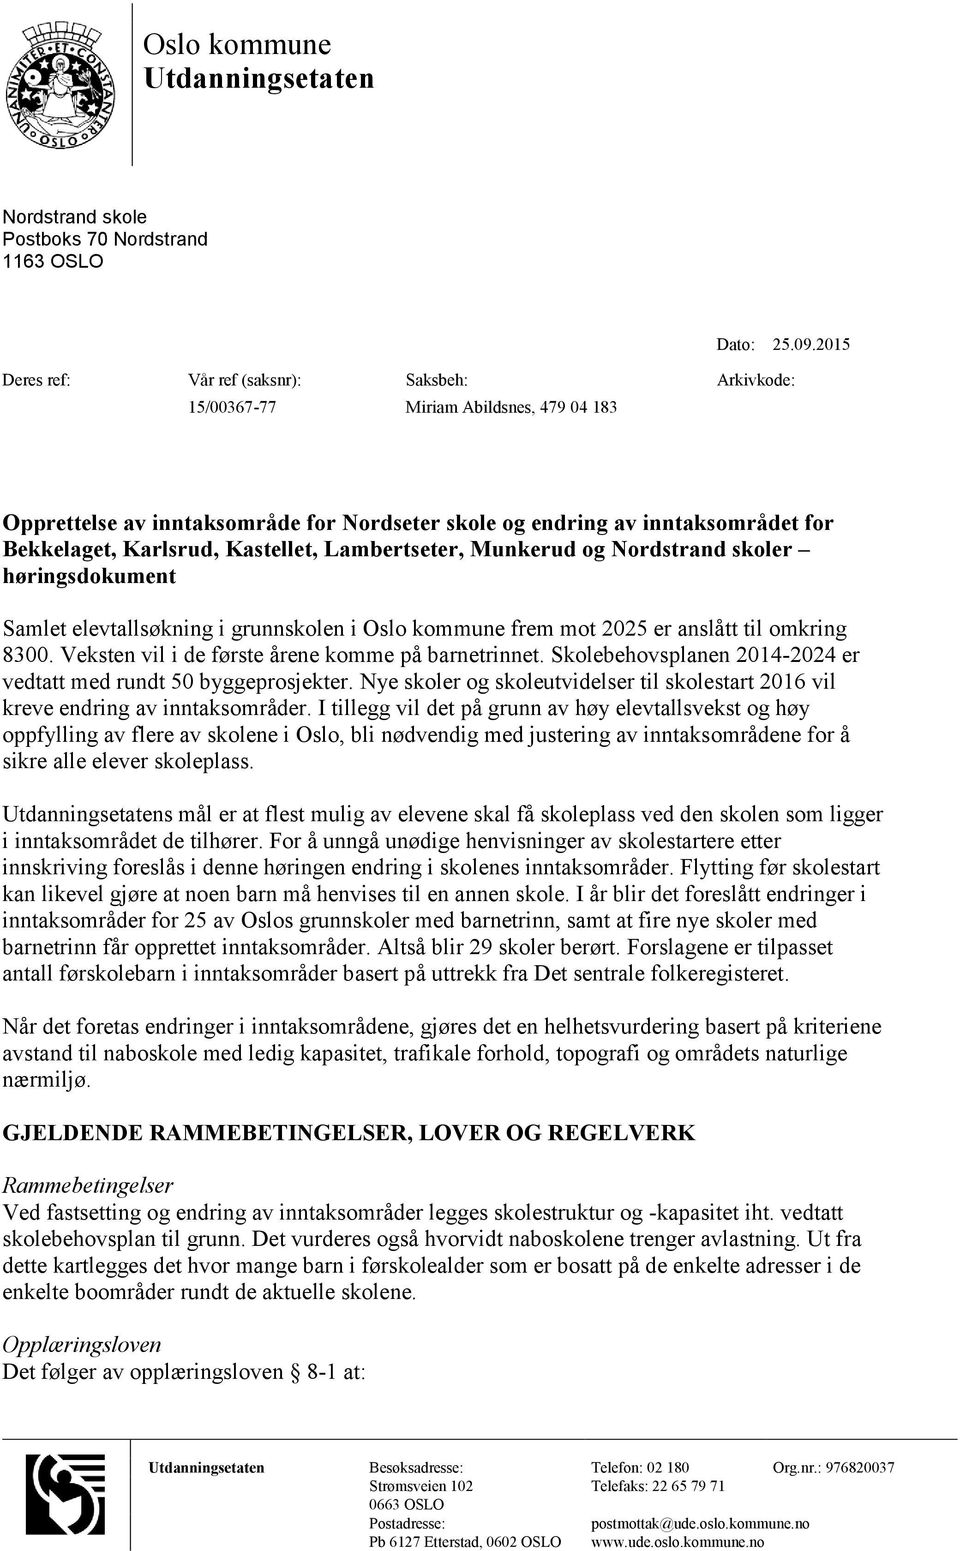 Munkerud og Nordstrand skoler høringsdokument Samlet elevtallsøkning i grunnskolen i Oslo kommune frem mot 2025 er anslått til omkring 8300. Veksten vil i de første årene komme på barnetrinnet.